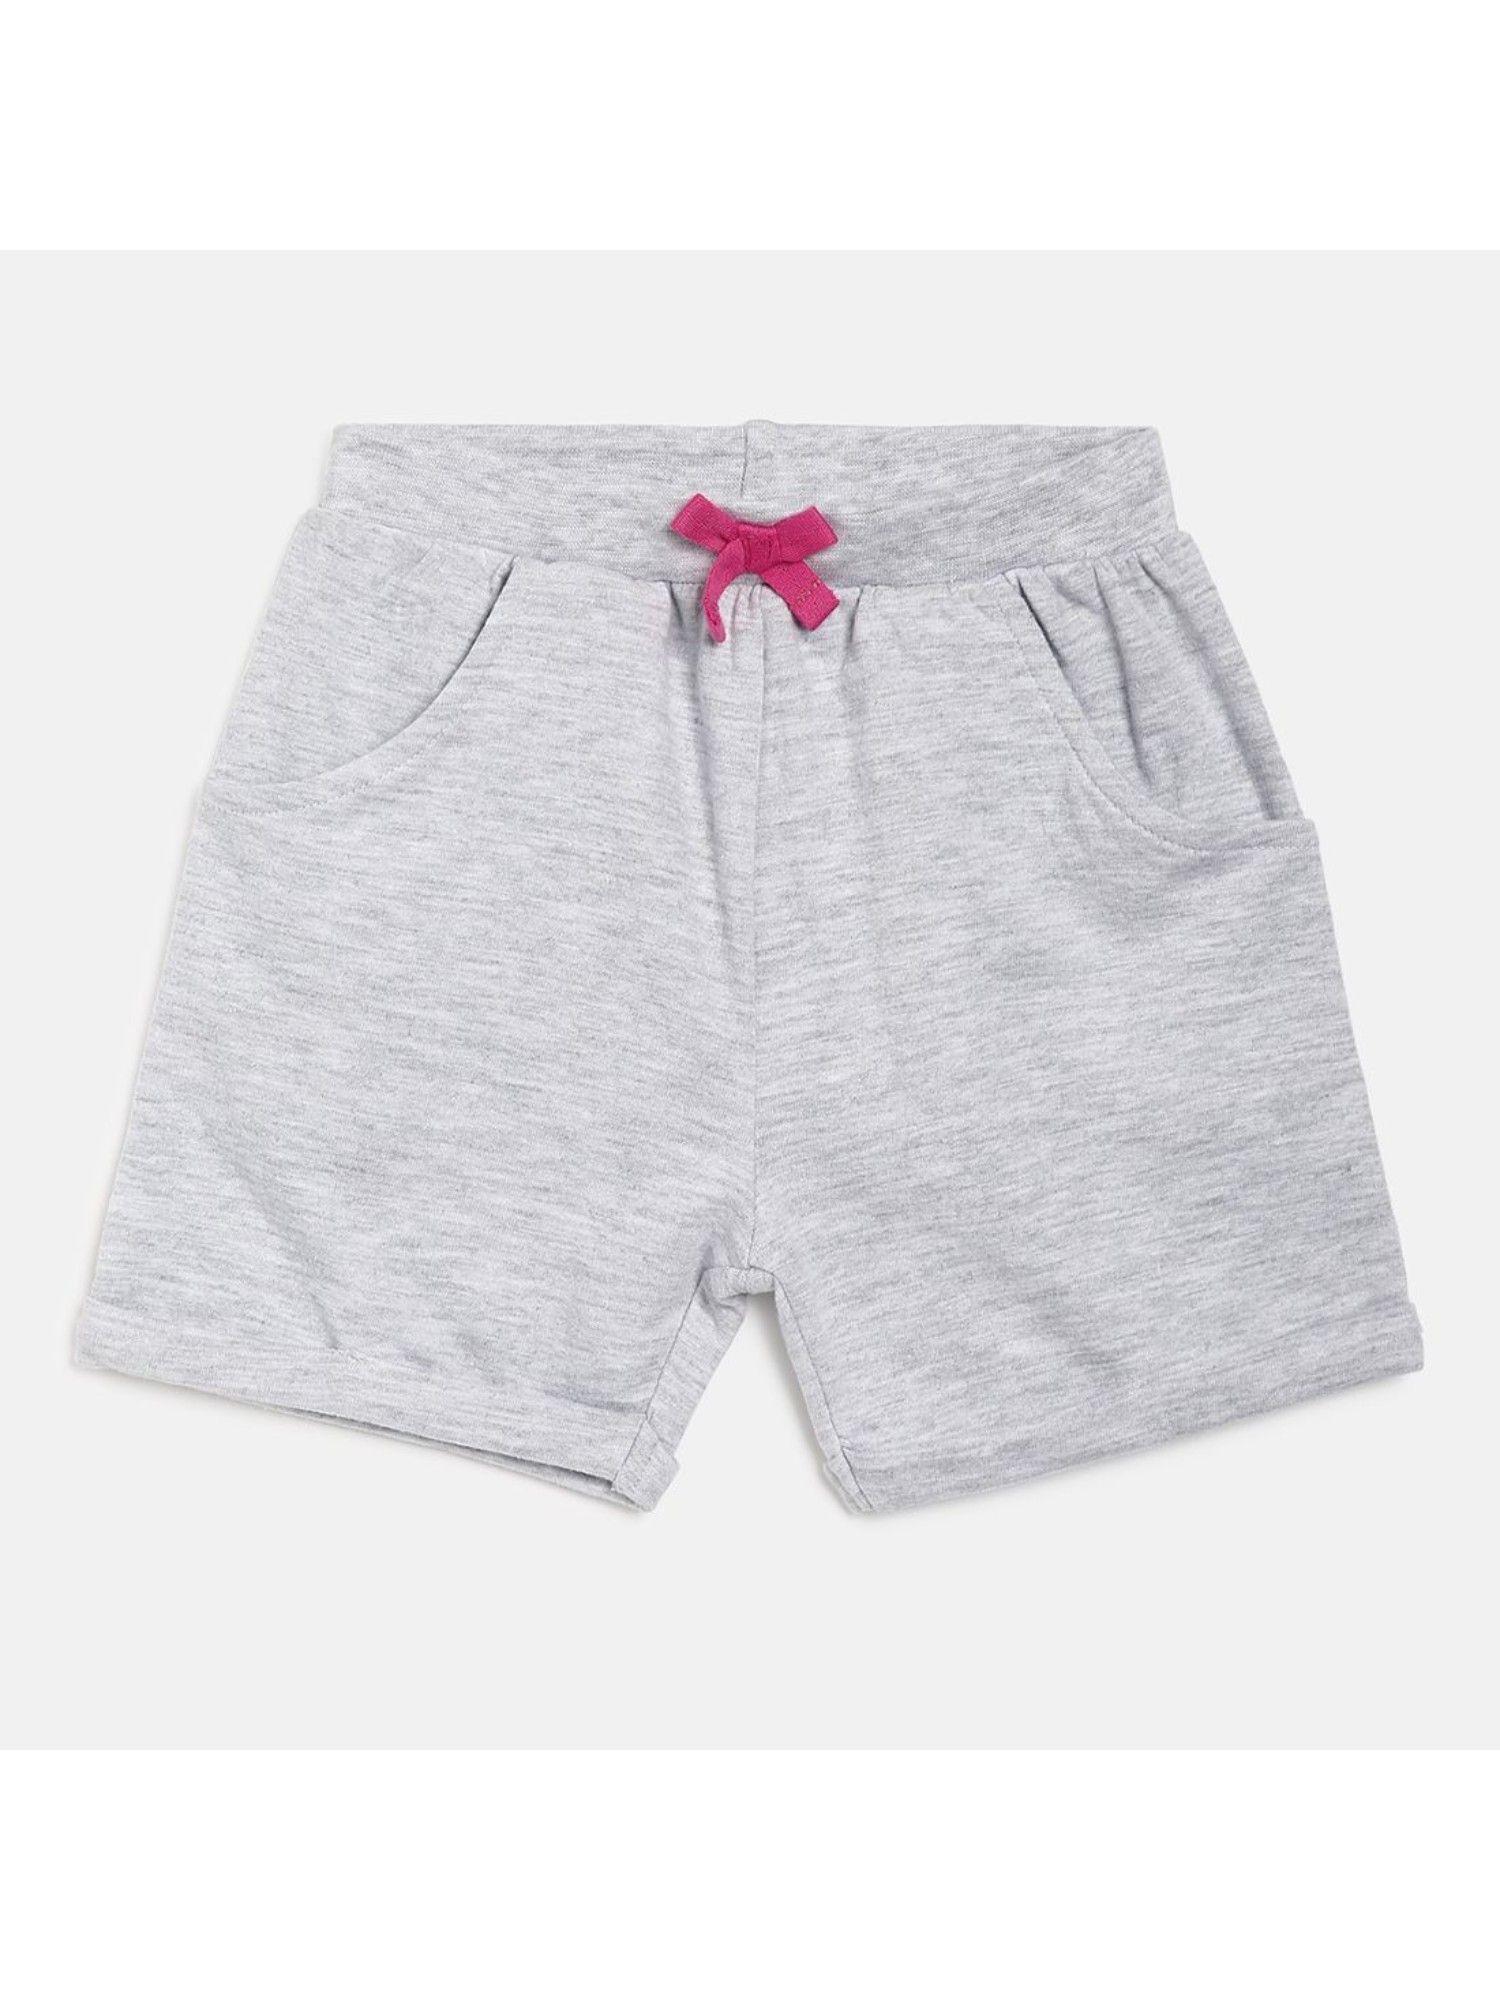 kids-girls-grey-shorts